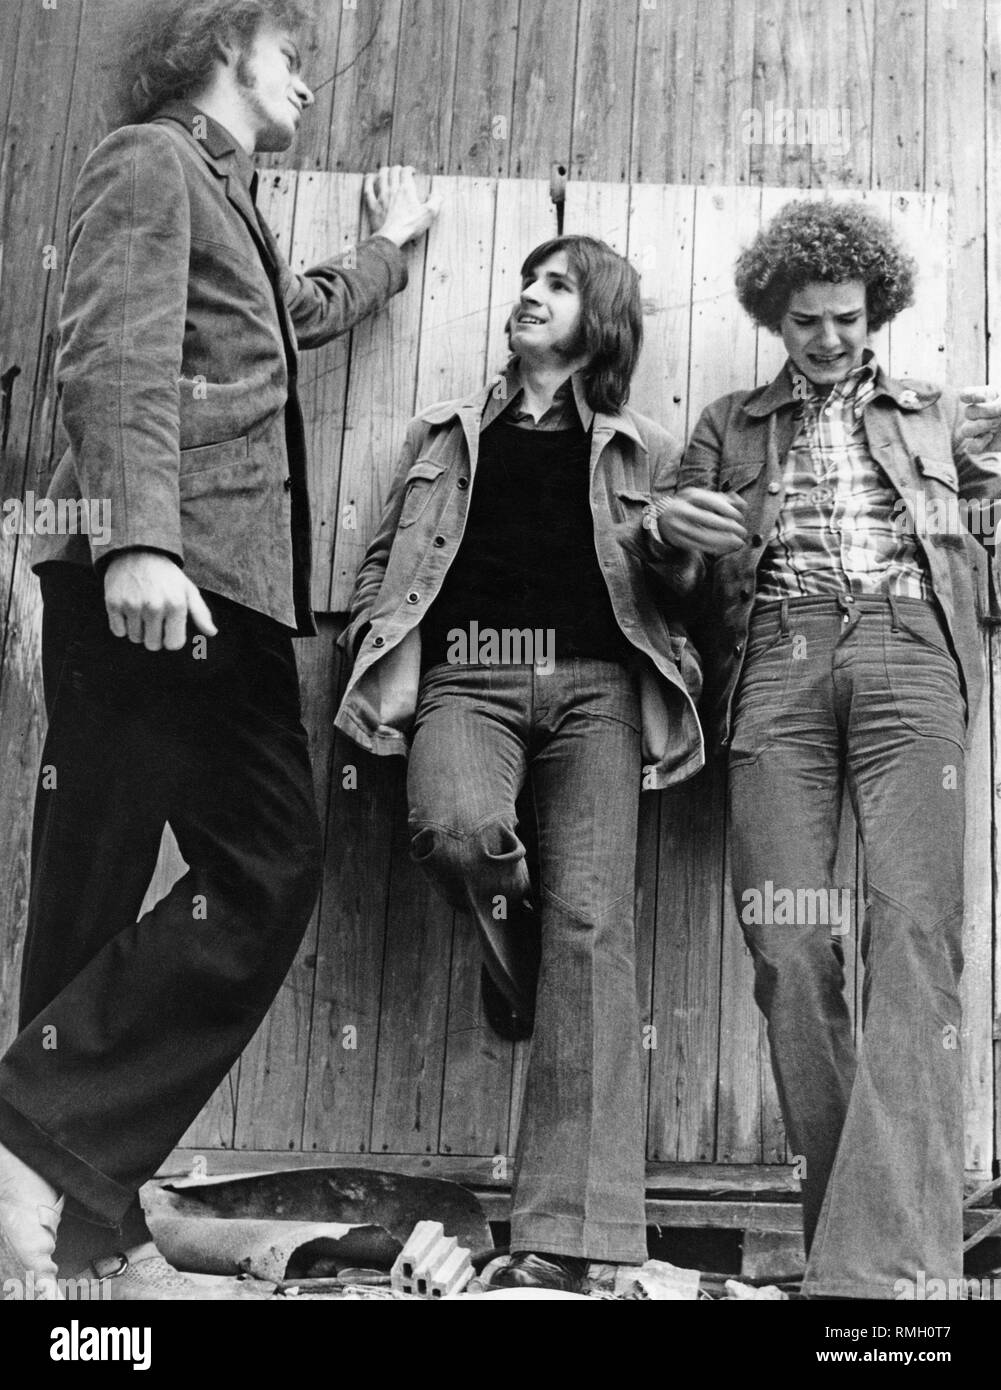 Tre adolescenti, indossando bell bottoms, appoggiarsi contro una parete in legno. Foto Stock